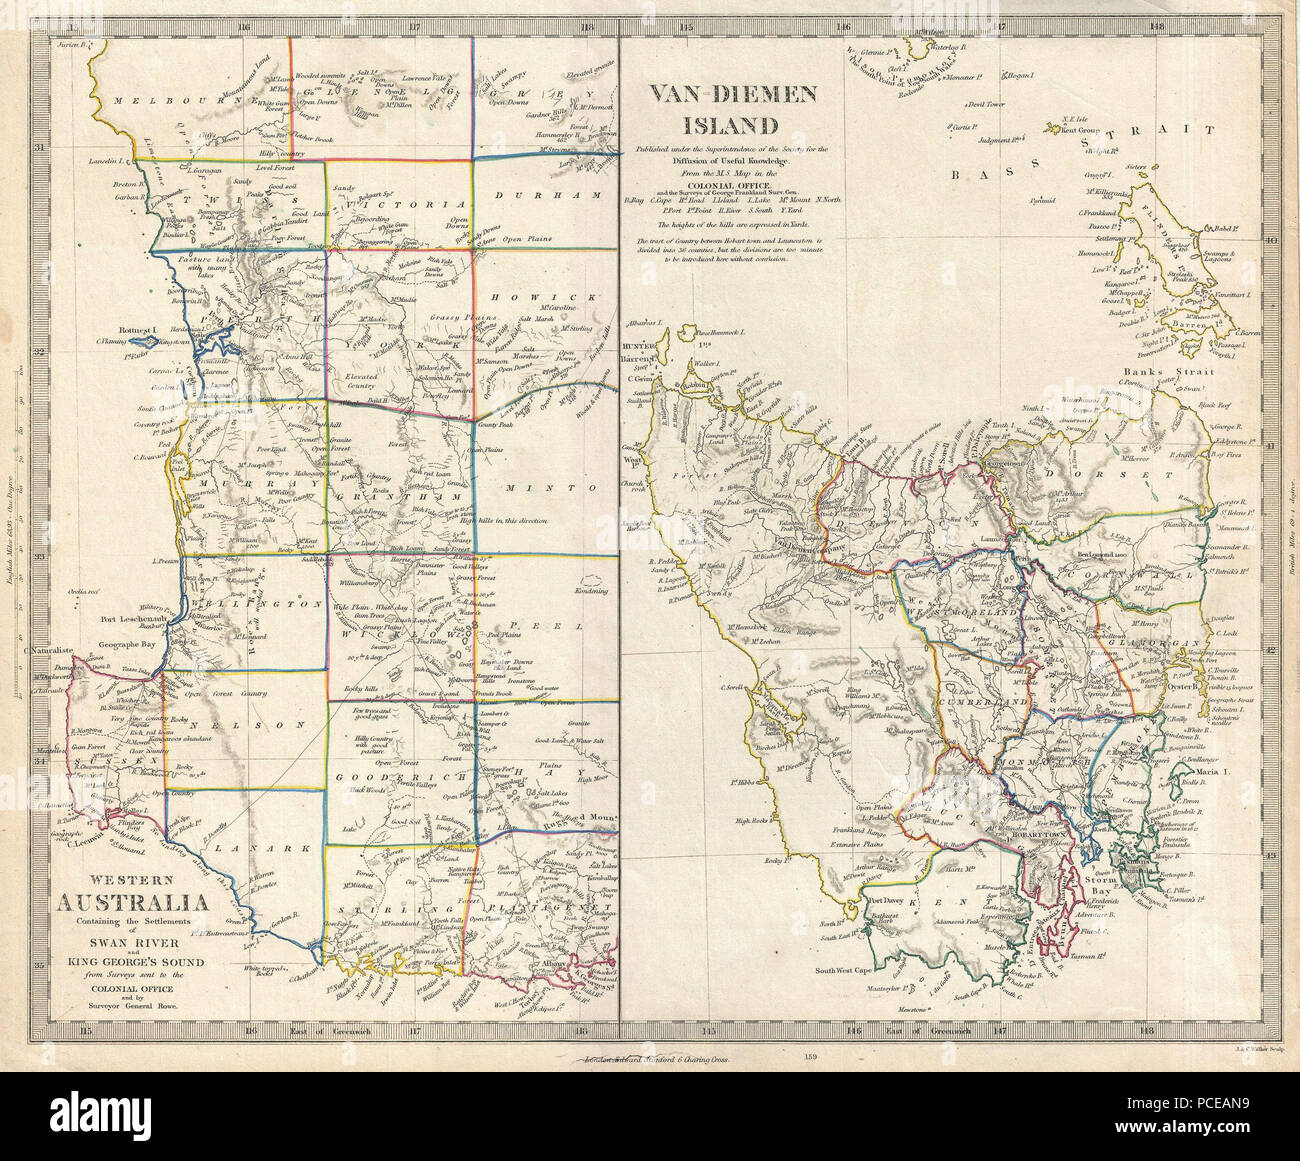 7 1849 S.D.U.K. Karte von Tasmanien oder Van Diemen's Land und Western Australien - Geographicus - VanDiemen - sduk-1849 Stockfoto